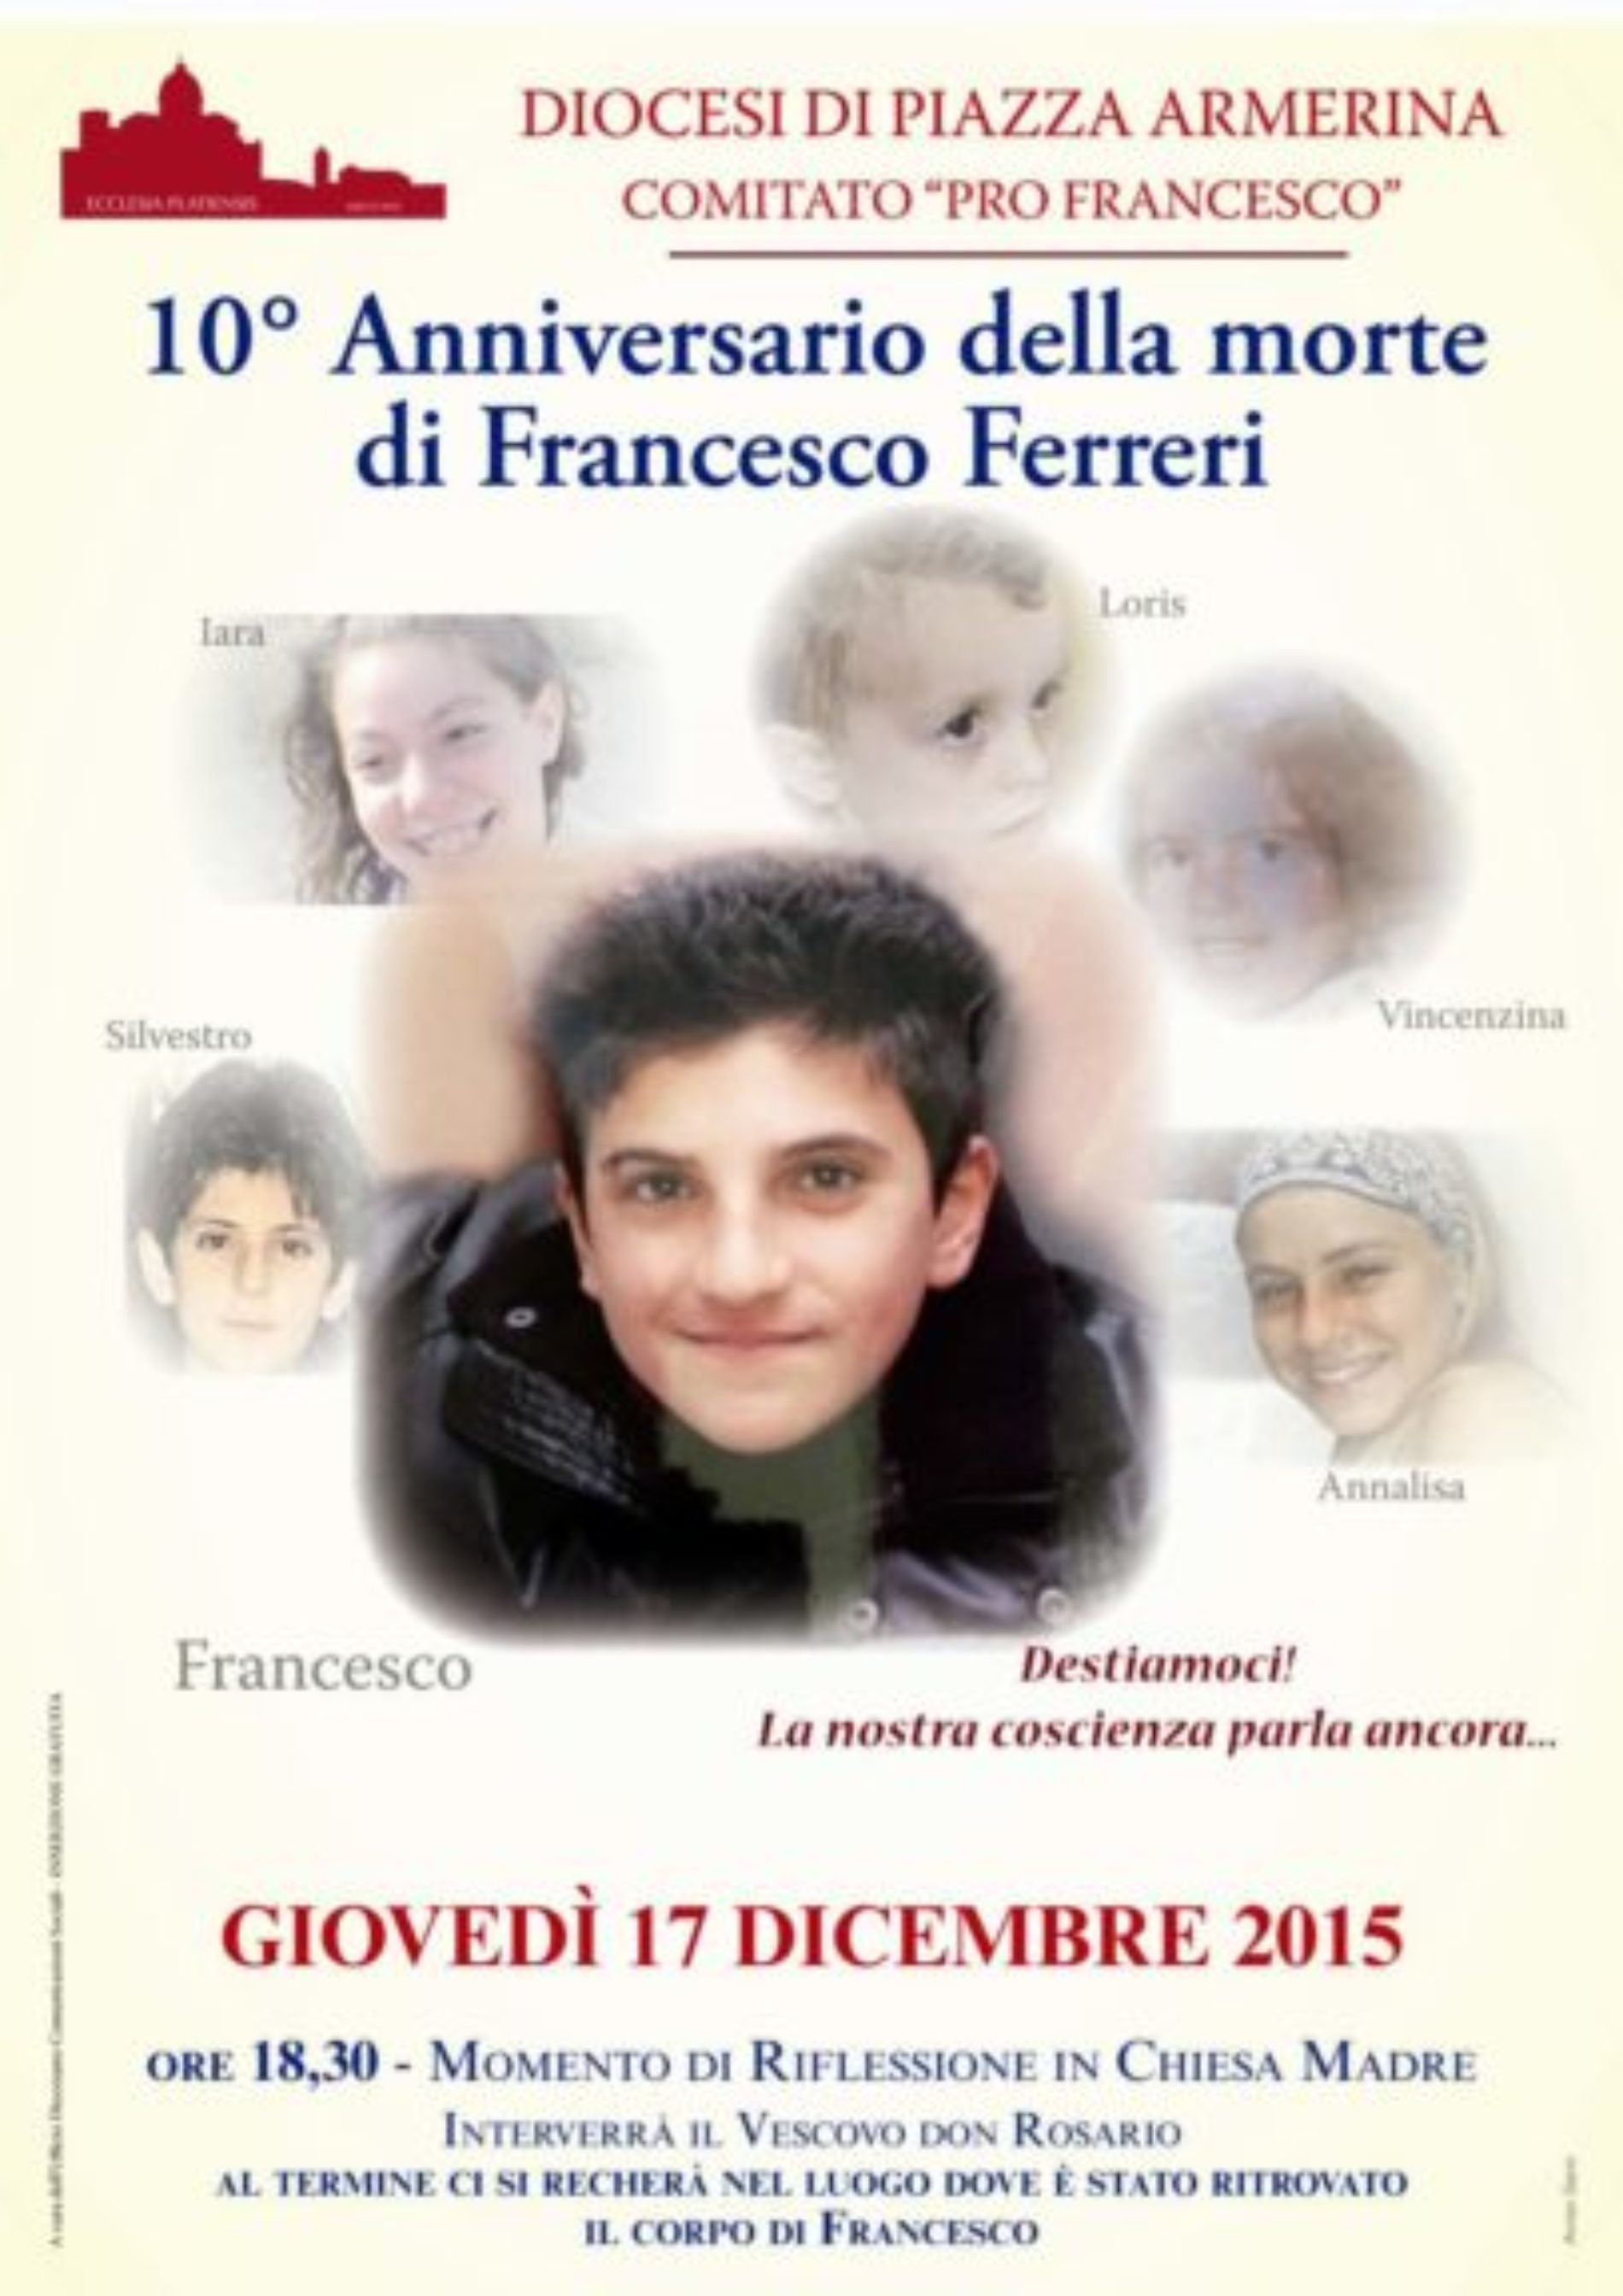 A dieci anni dalla morte la Diocesi Armerina ricorda Francesco Ferreri